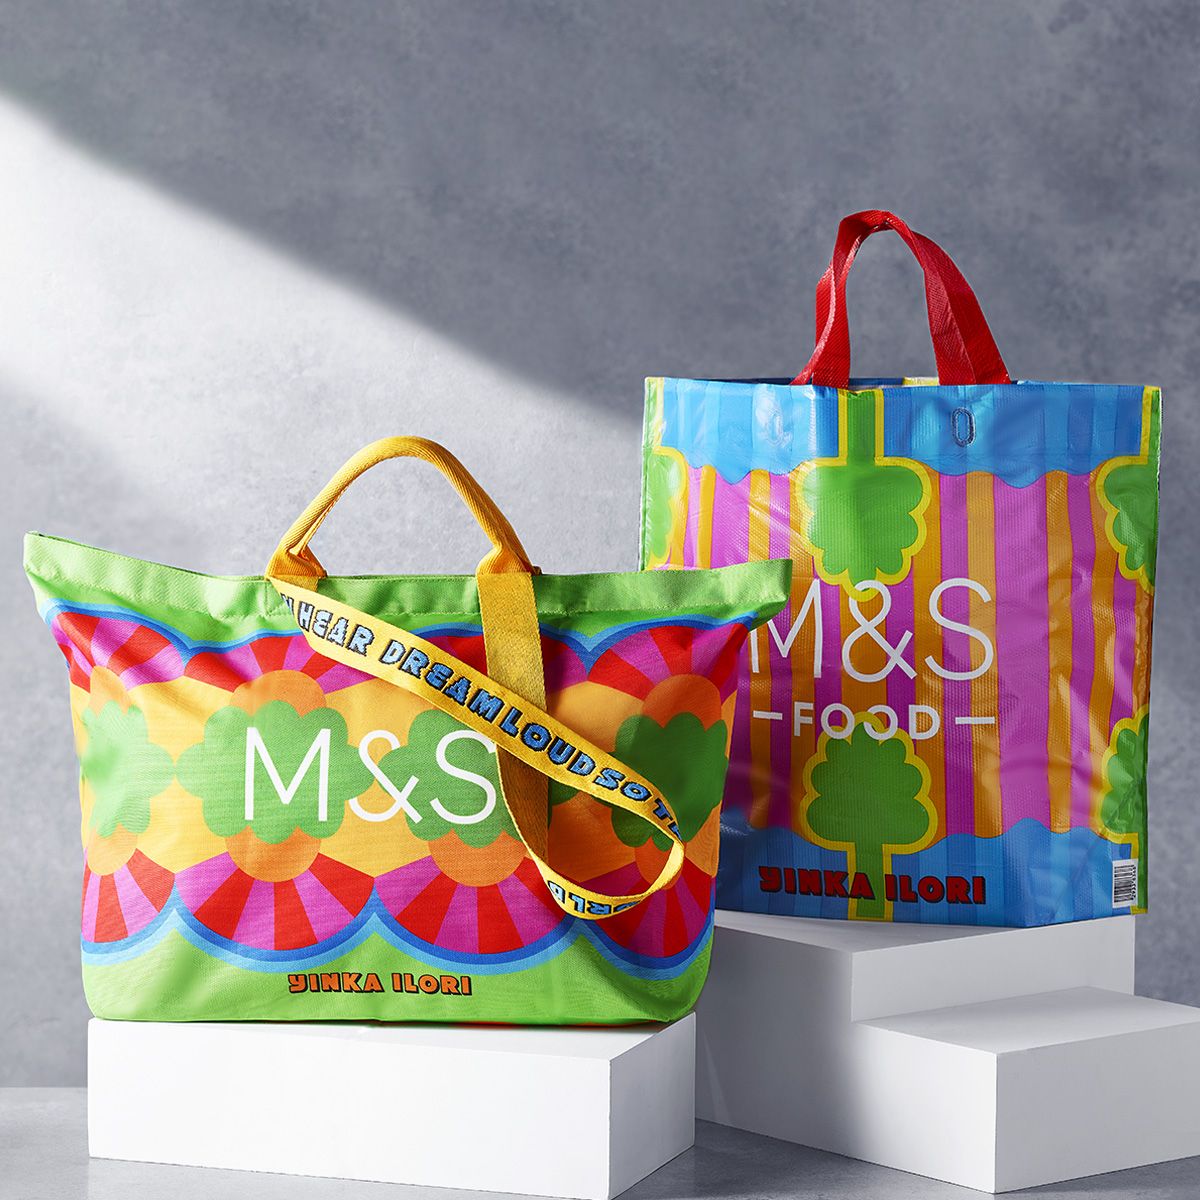 The M&S Handbag That Looks Designer Is Back In Stock